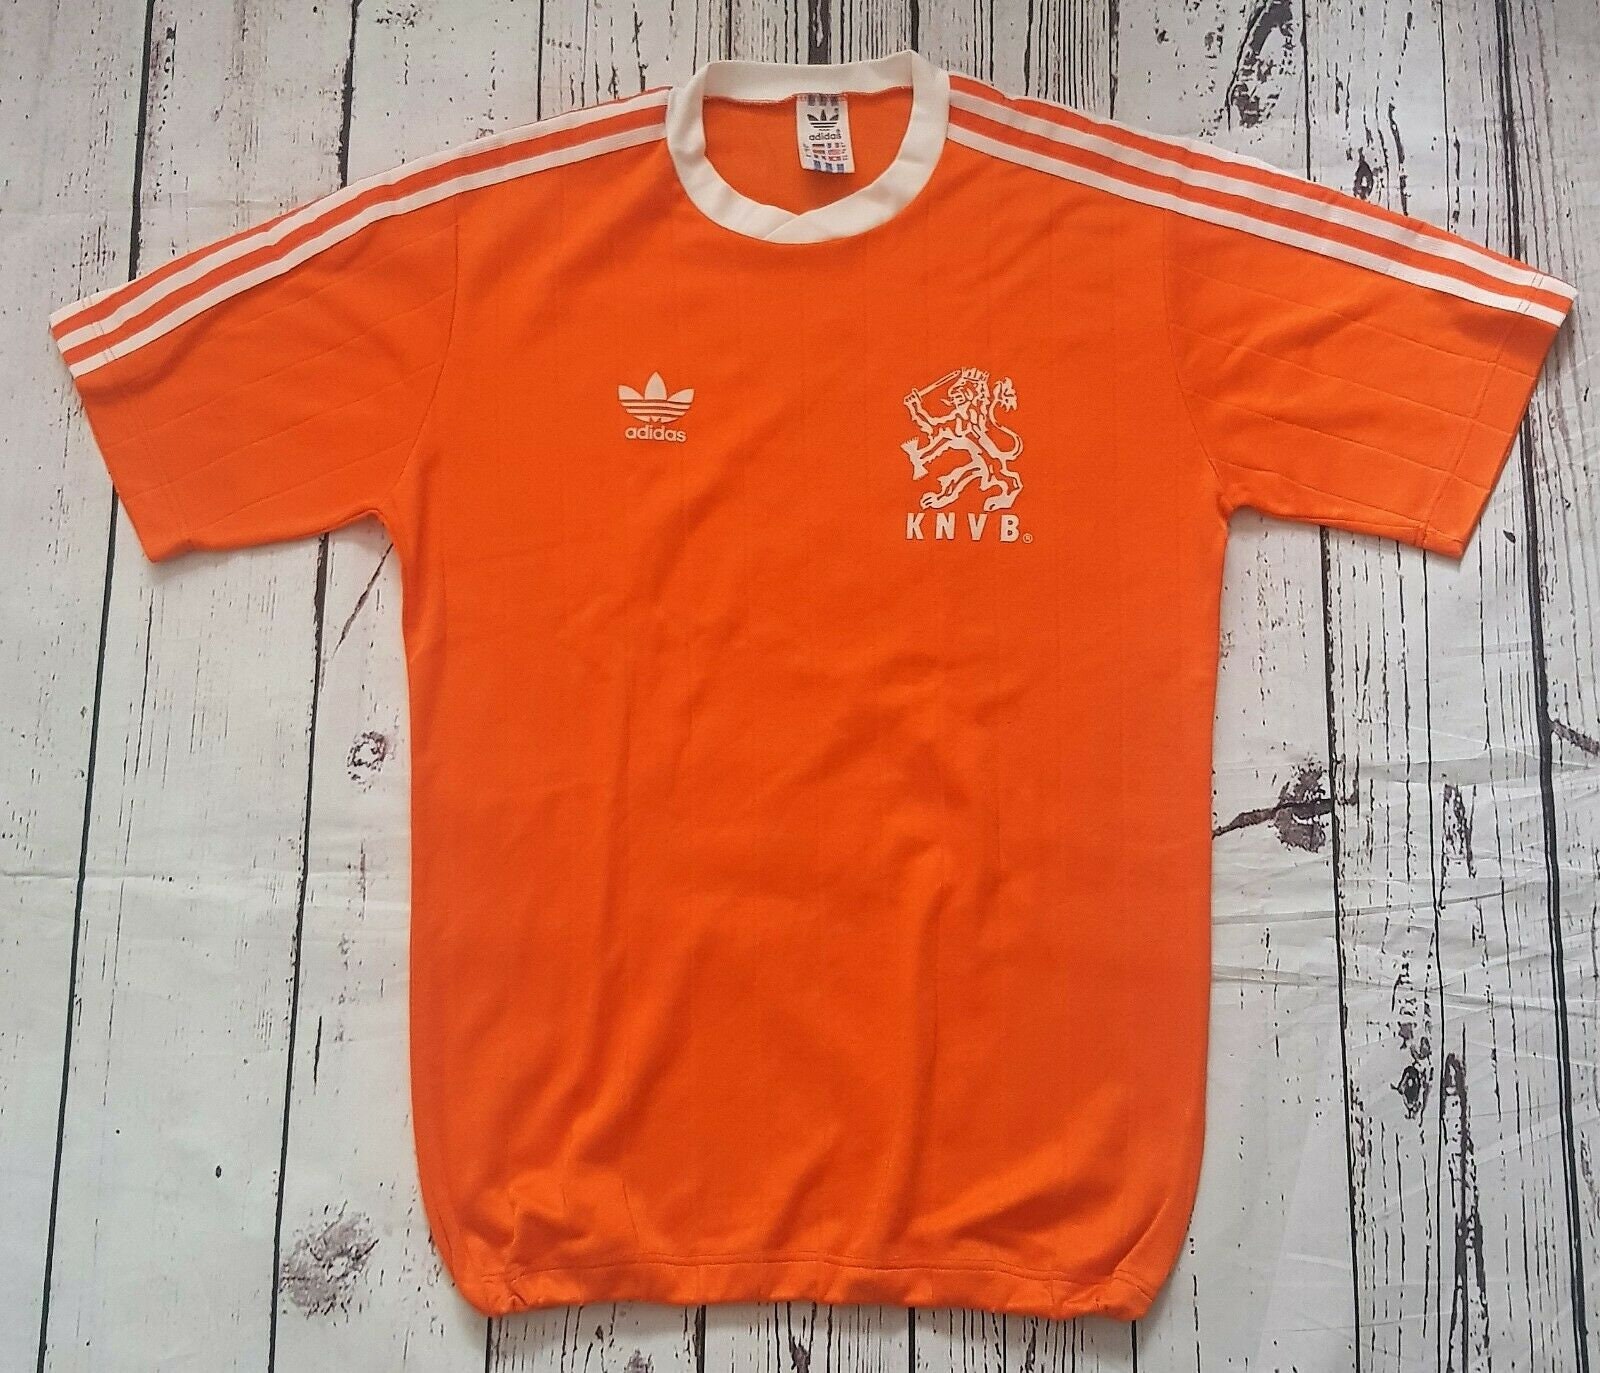 Adidas holland shirt - España